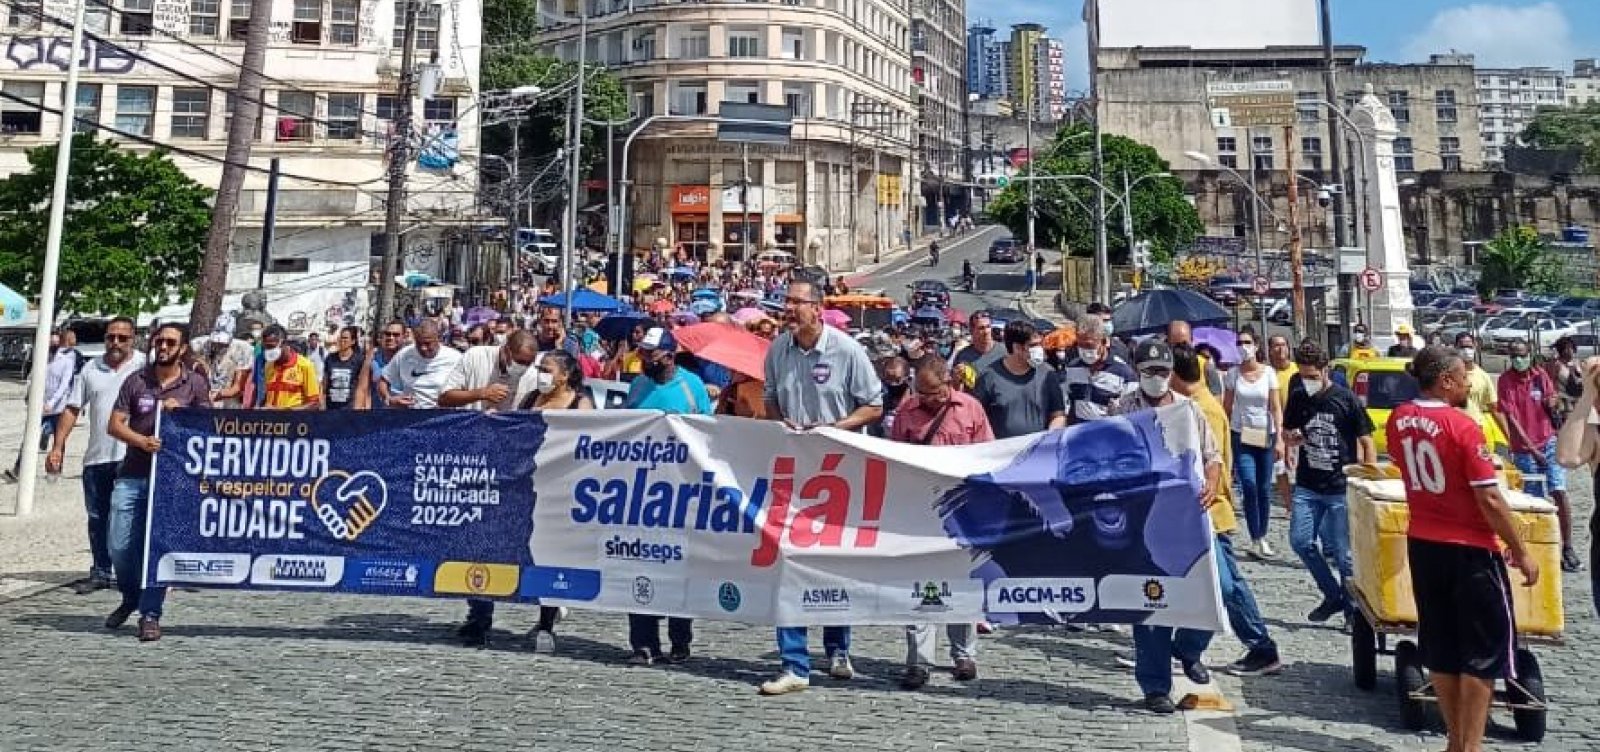 Servidores municipais de Salvador realizam protesto em campanha salarial; assembleia avaliará paralisação